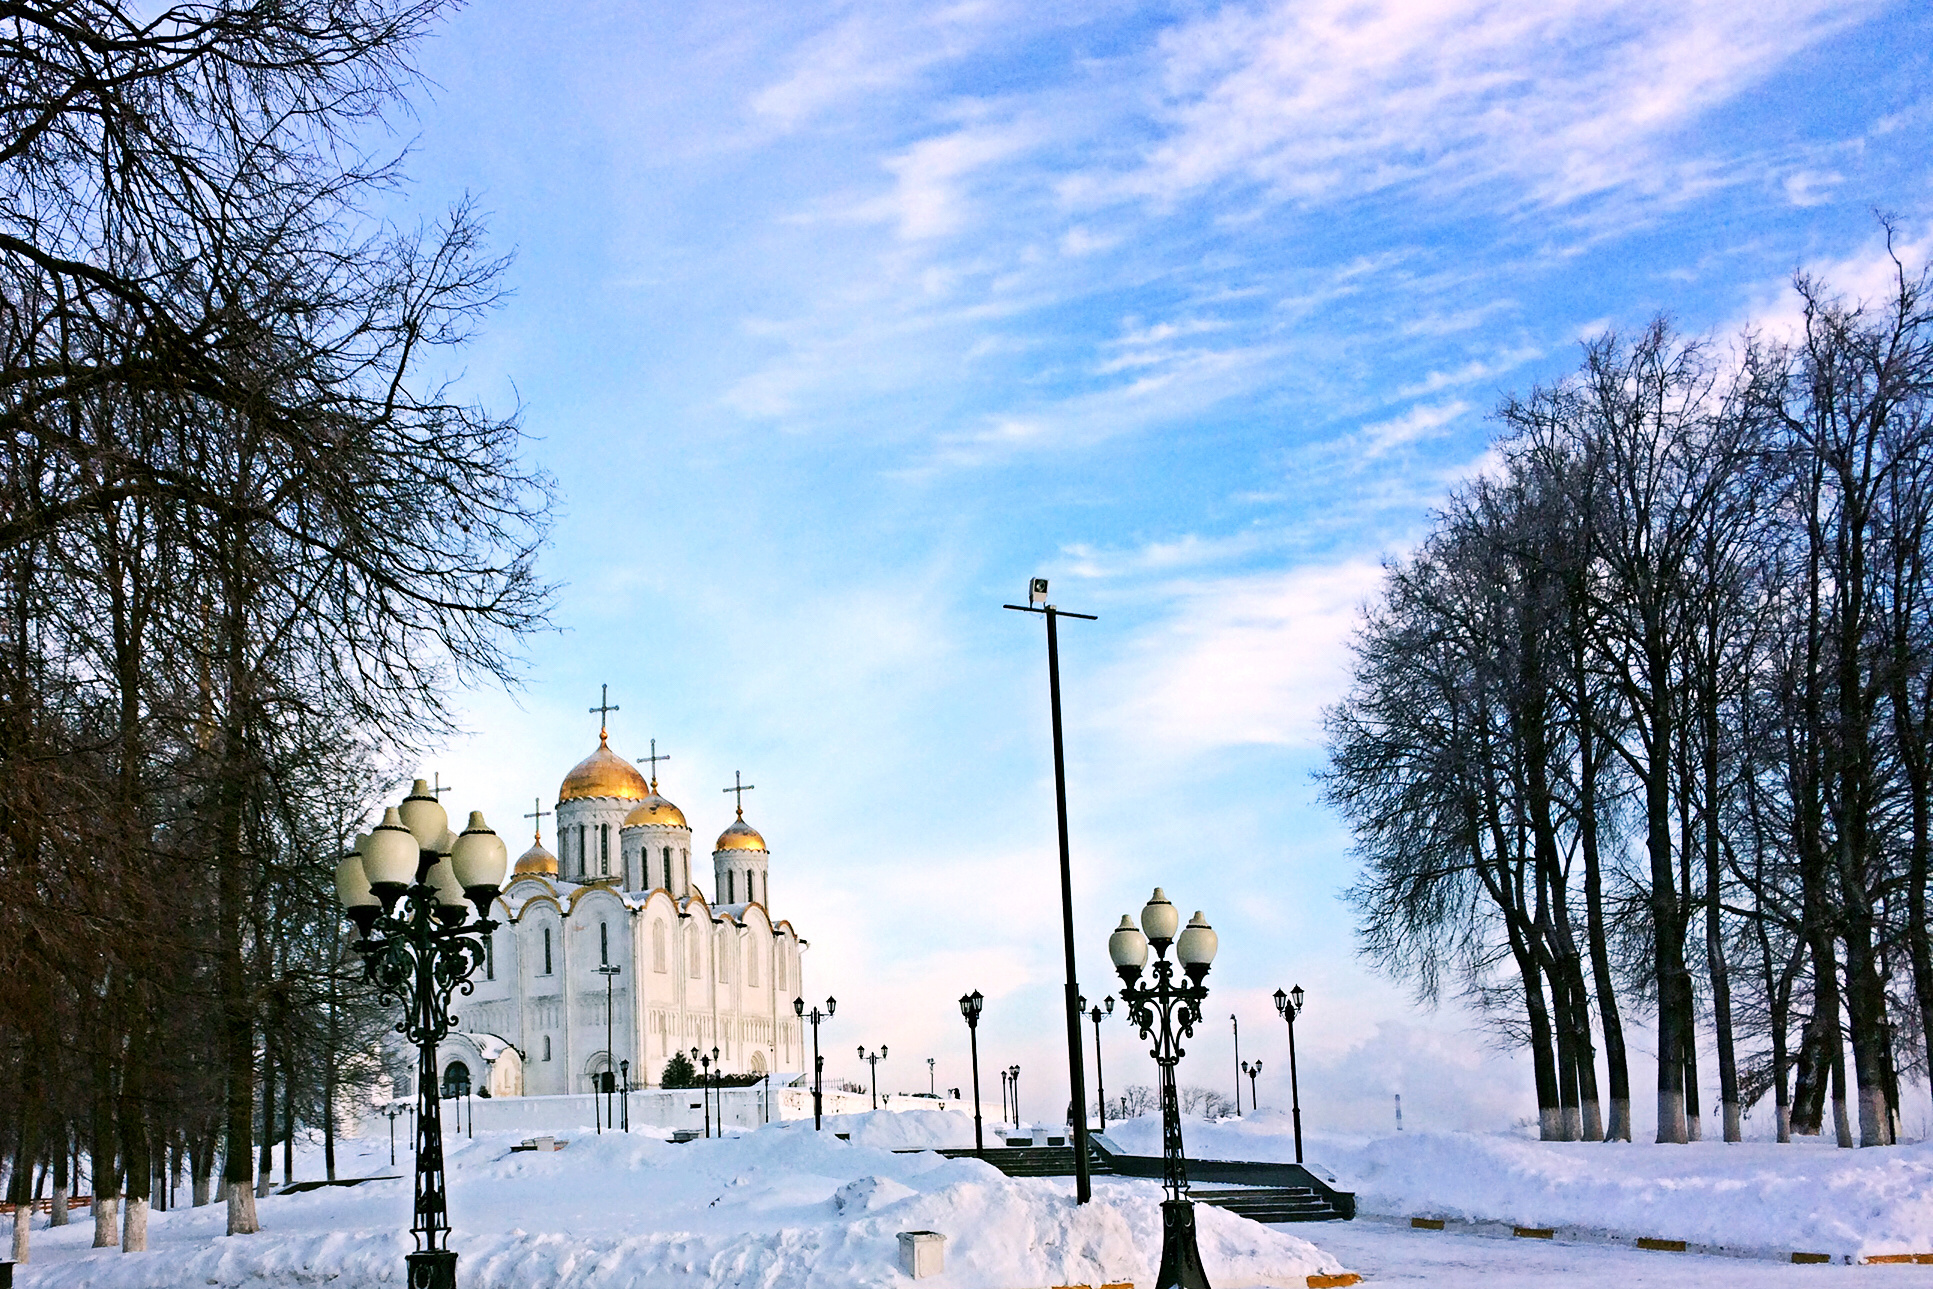 俄罗斯旅游图片,俄罗斯自助游图片,俄罗斯旅游景点照片 - 马蜂窝图库 - 马蜂窝